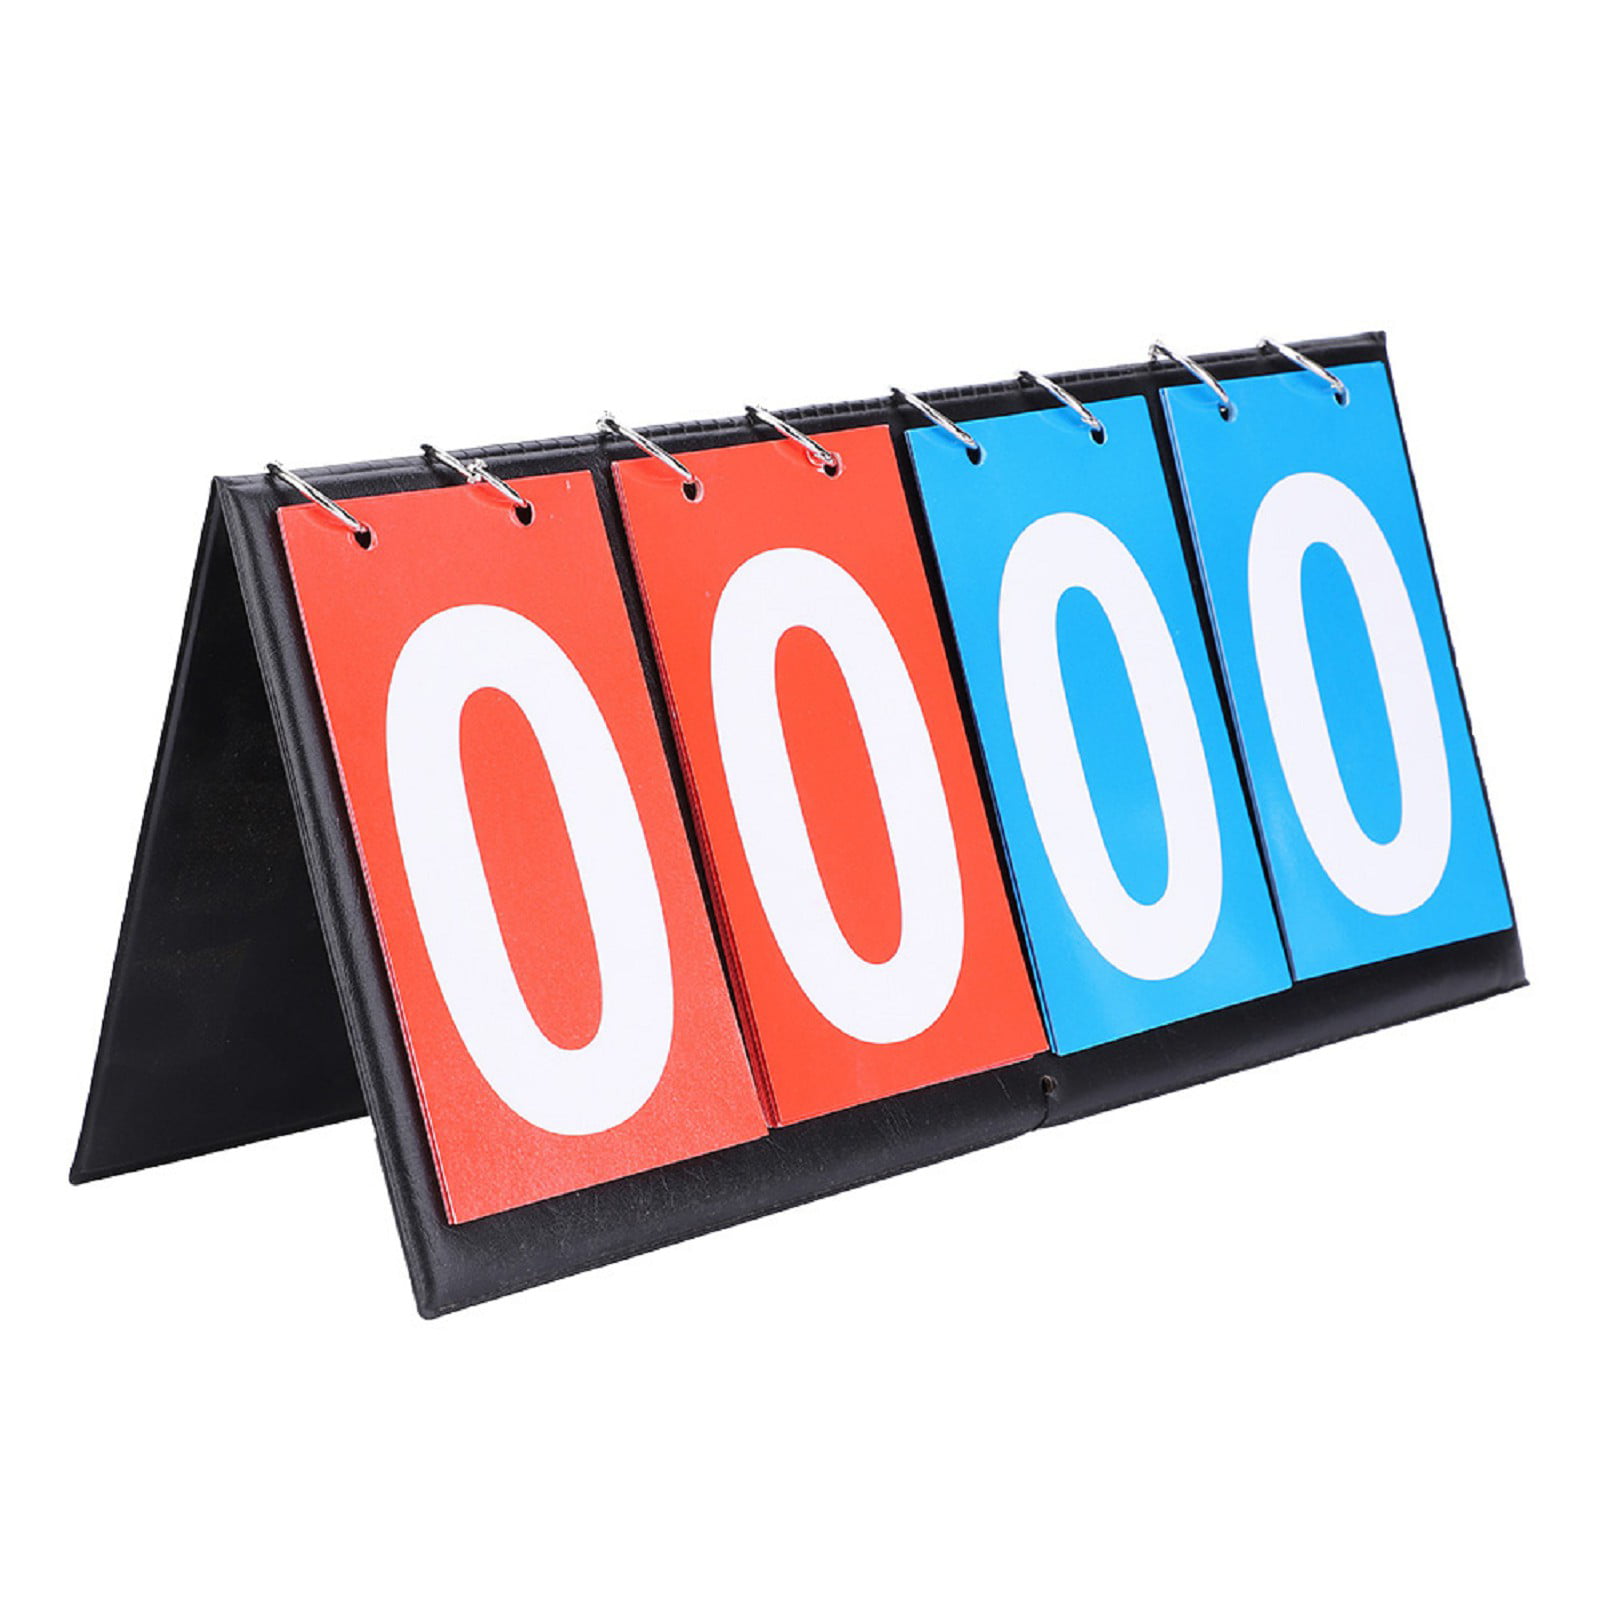 2/3/4 Digit Referee Scoreboard Sports Soccer Basketball Tennis Score Tablet 